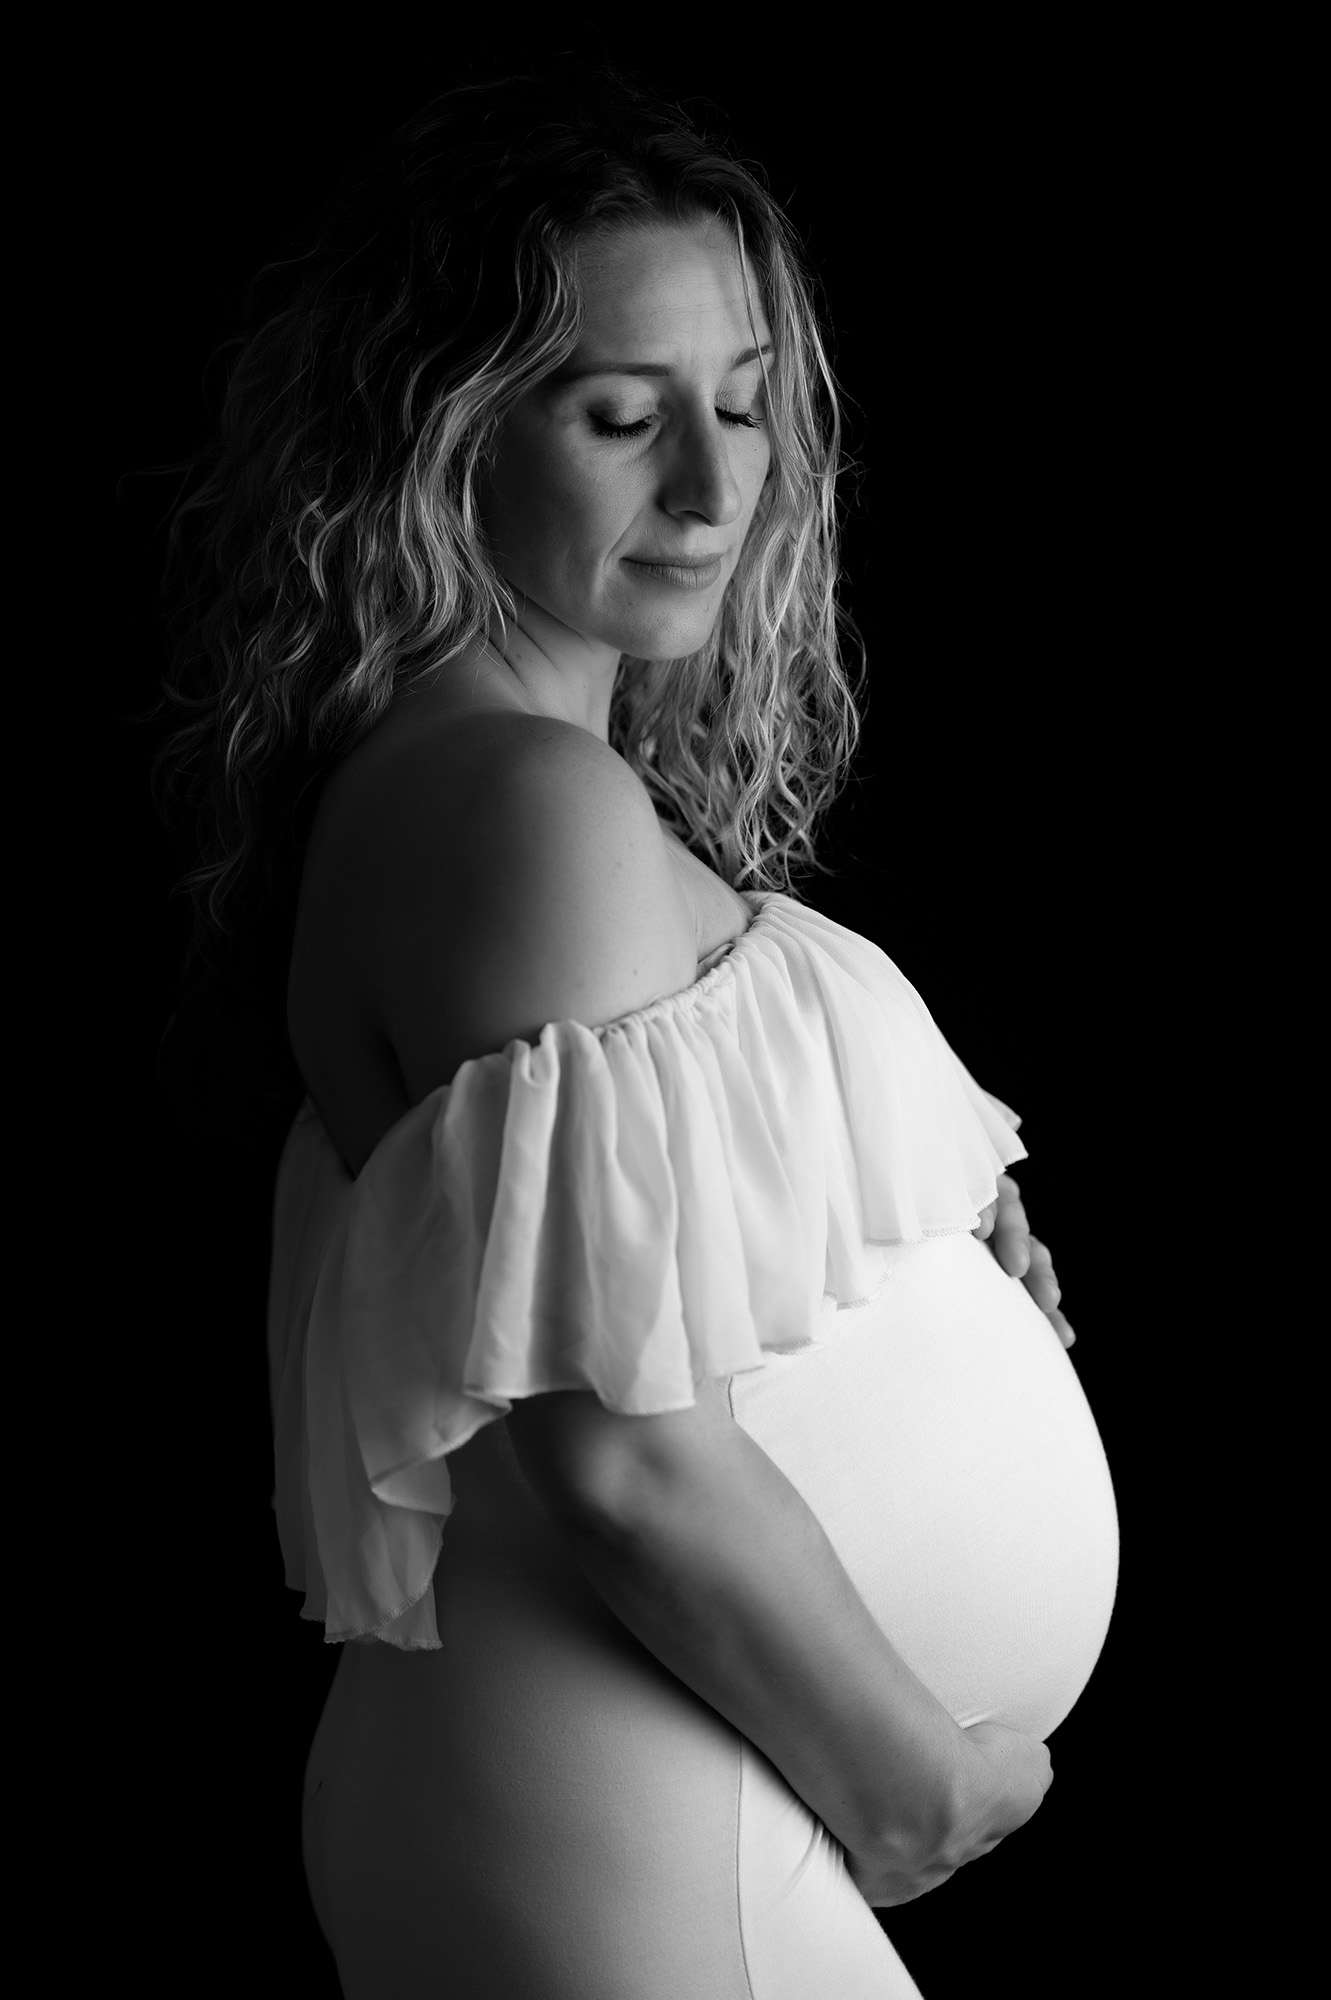 photo noir et blanc d'une femme enceinte habillée d'une robe avec un volant au niveau de la poitrine. Son regard est incliné vers le bas et elle a les yeux fermés.